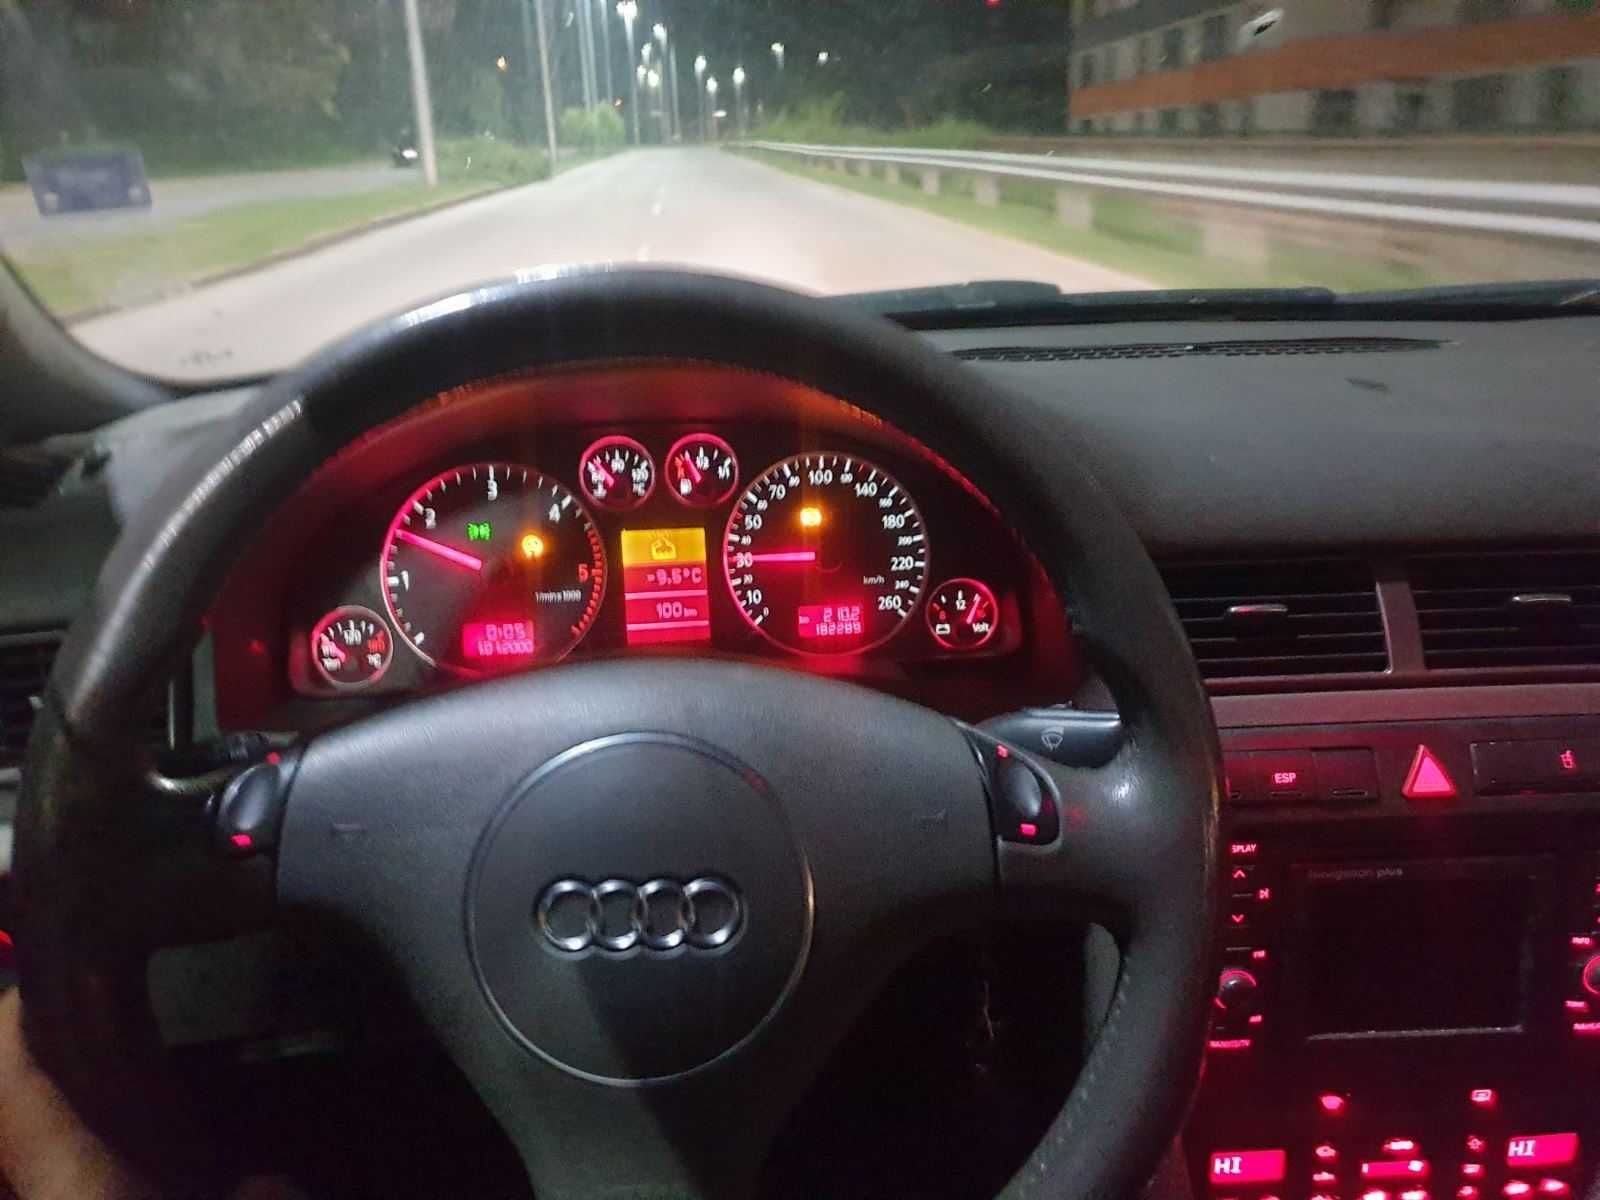 navi media Audi навигация мултимедия Ауди А4 А6 оригинална